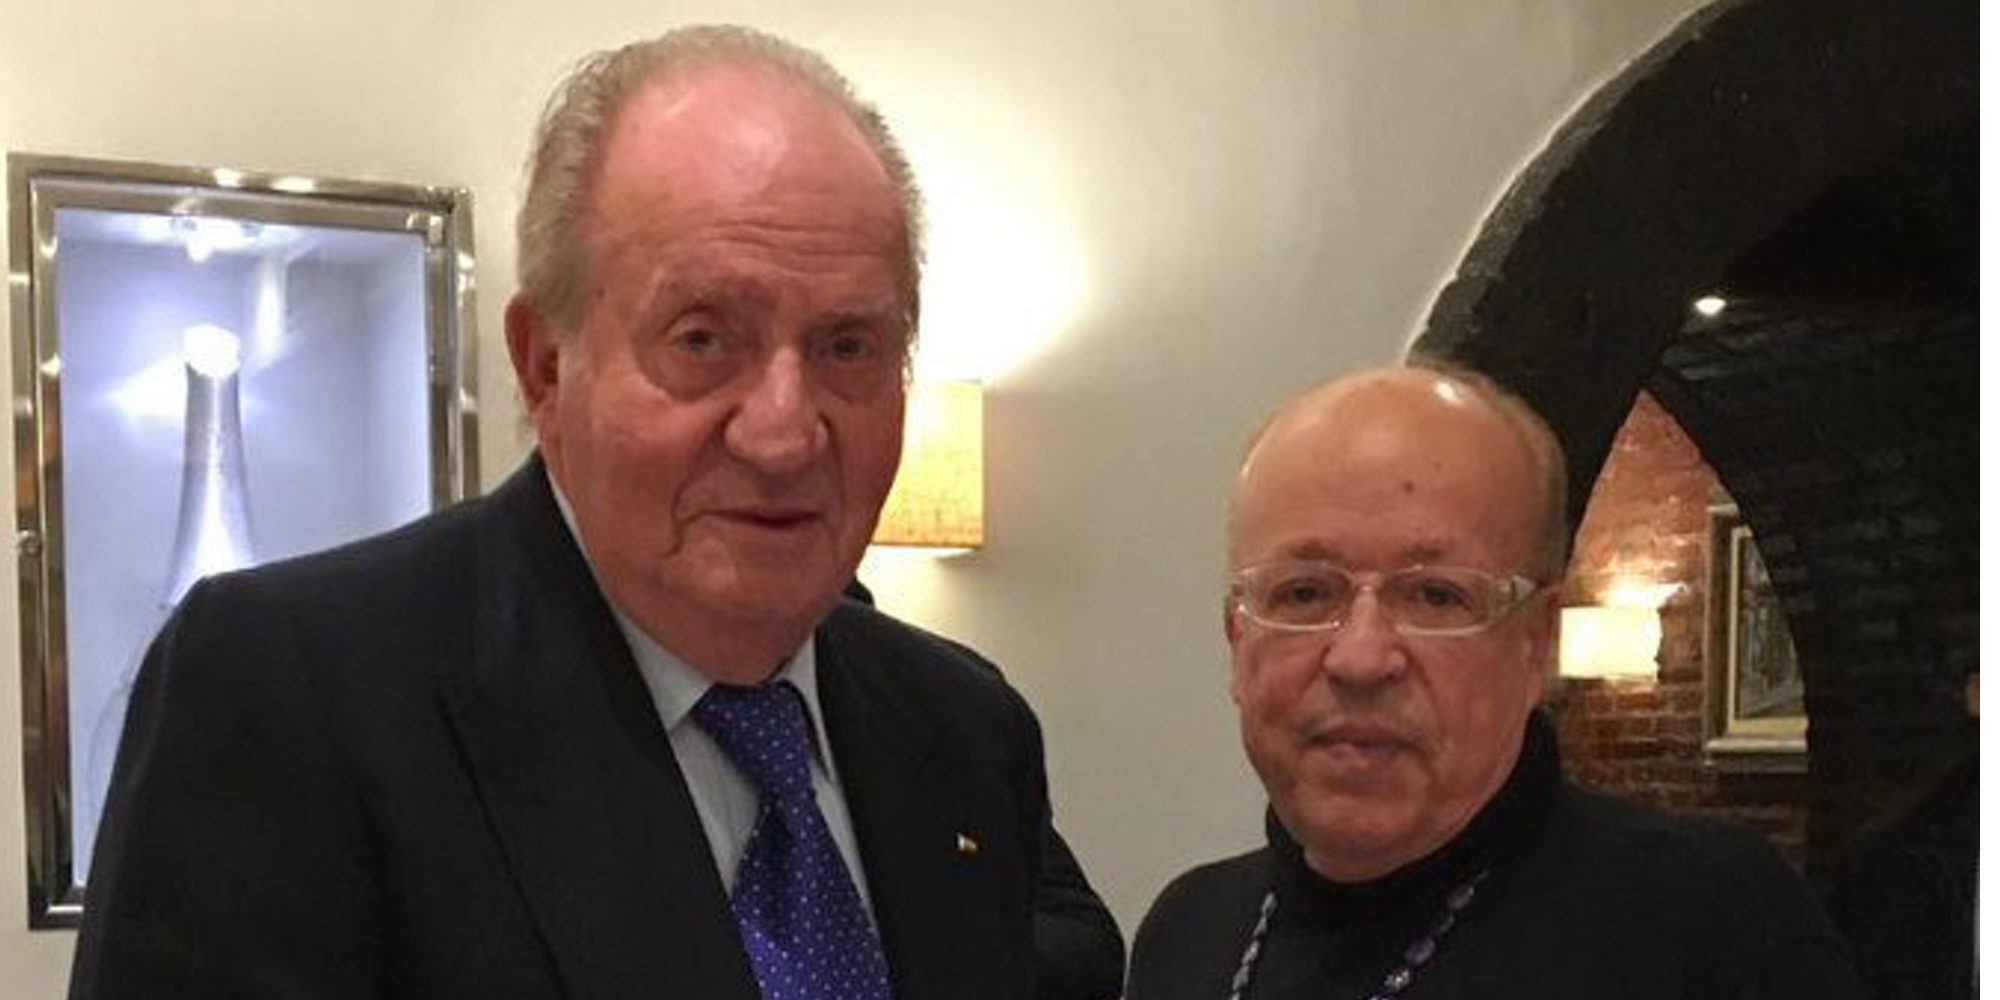 Rappel habla del Rey Juan Carlos: "Le respeto mucho y es un señor encantador. Es un gran amigo mío"